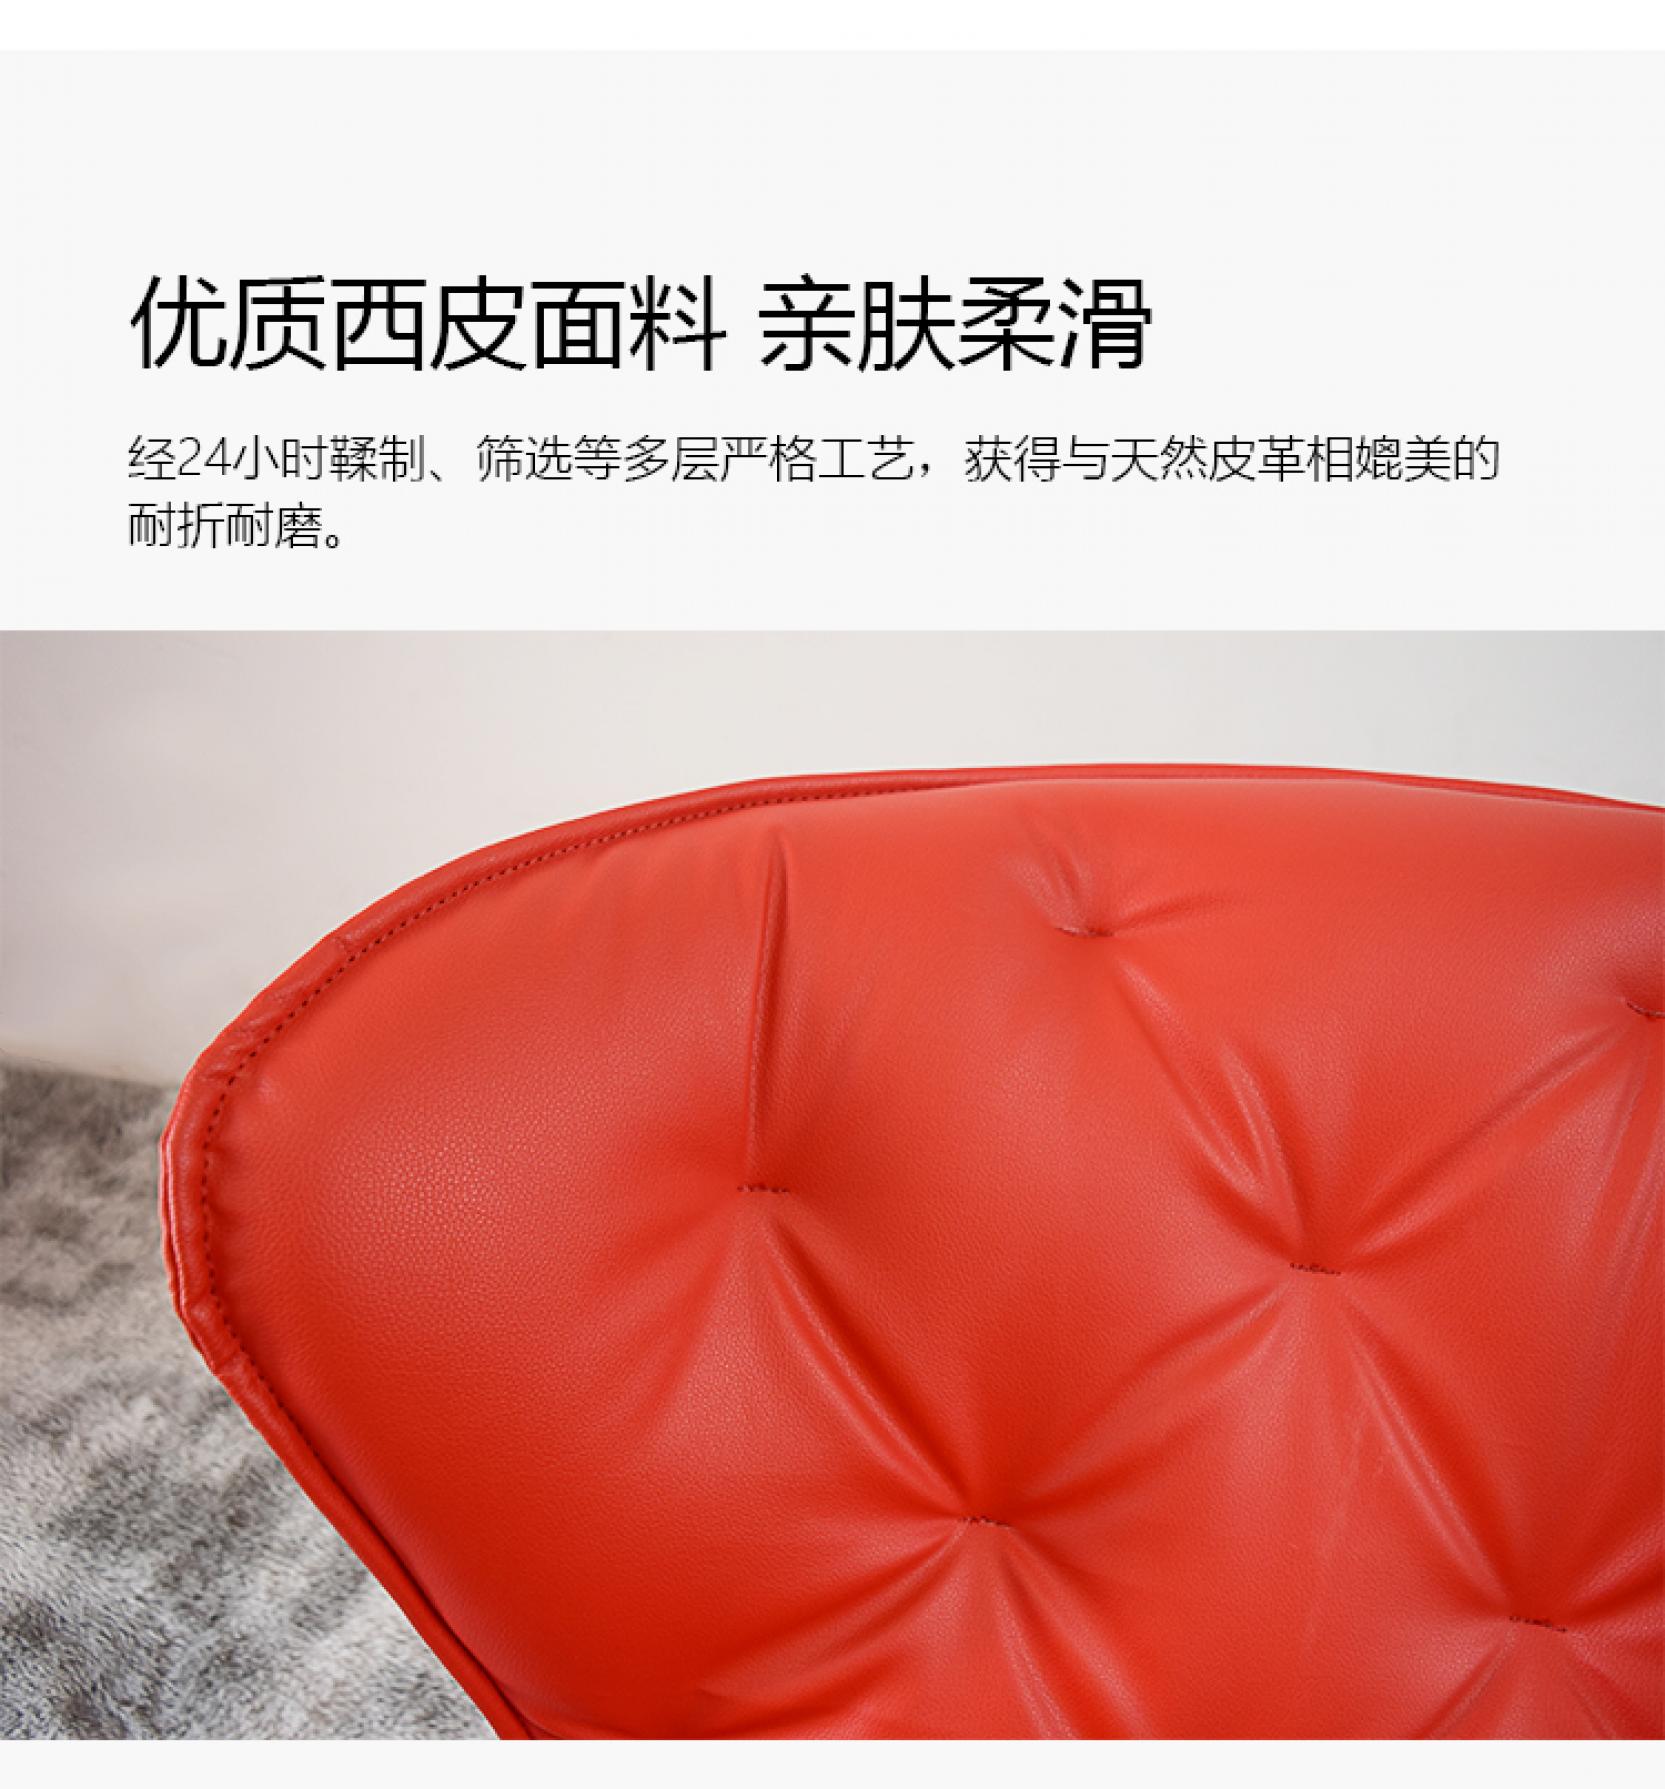 SY-KF4195-1红色摇椅-详情页_10.jpg